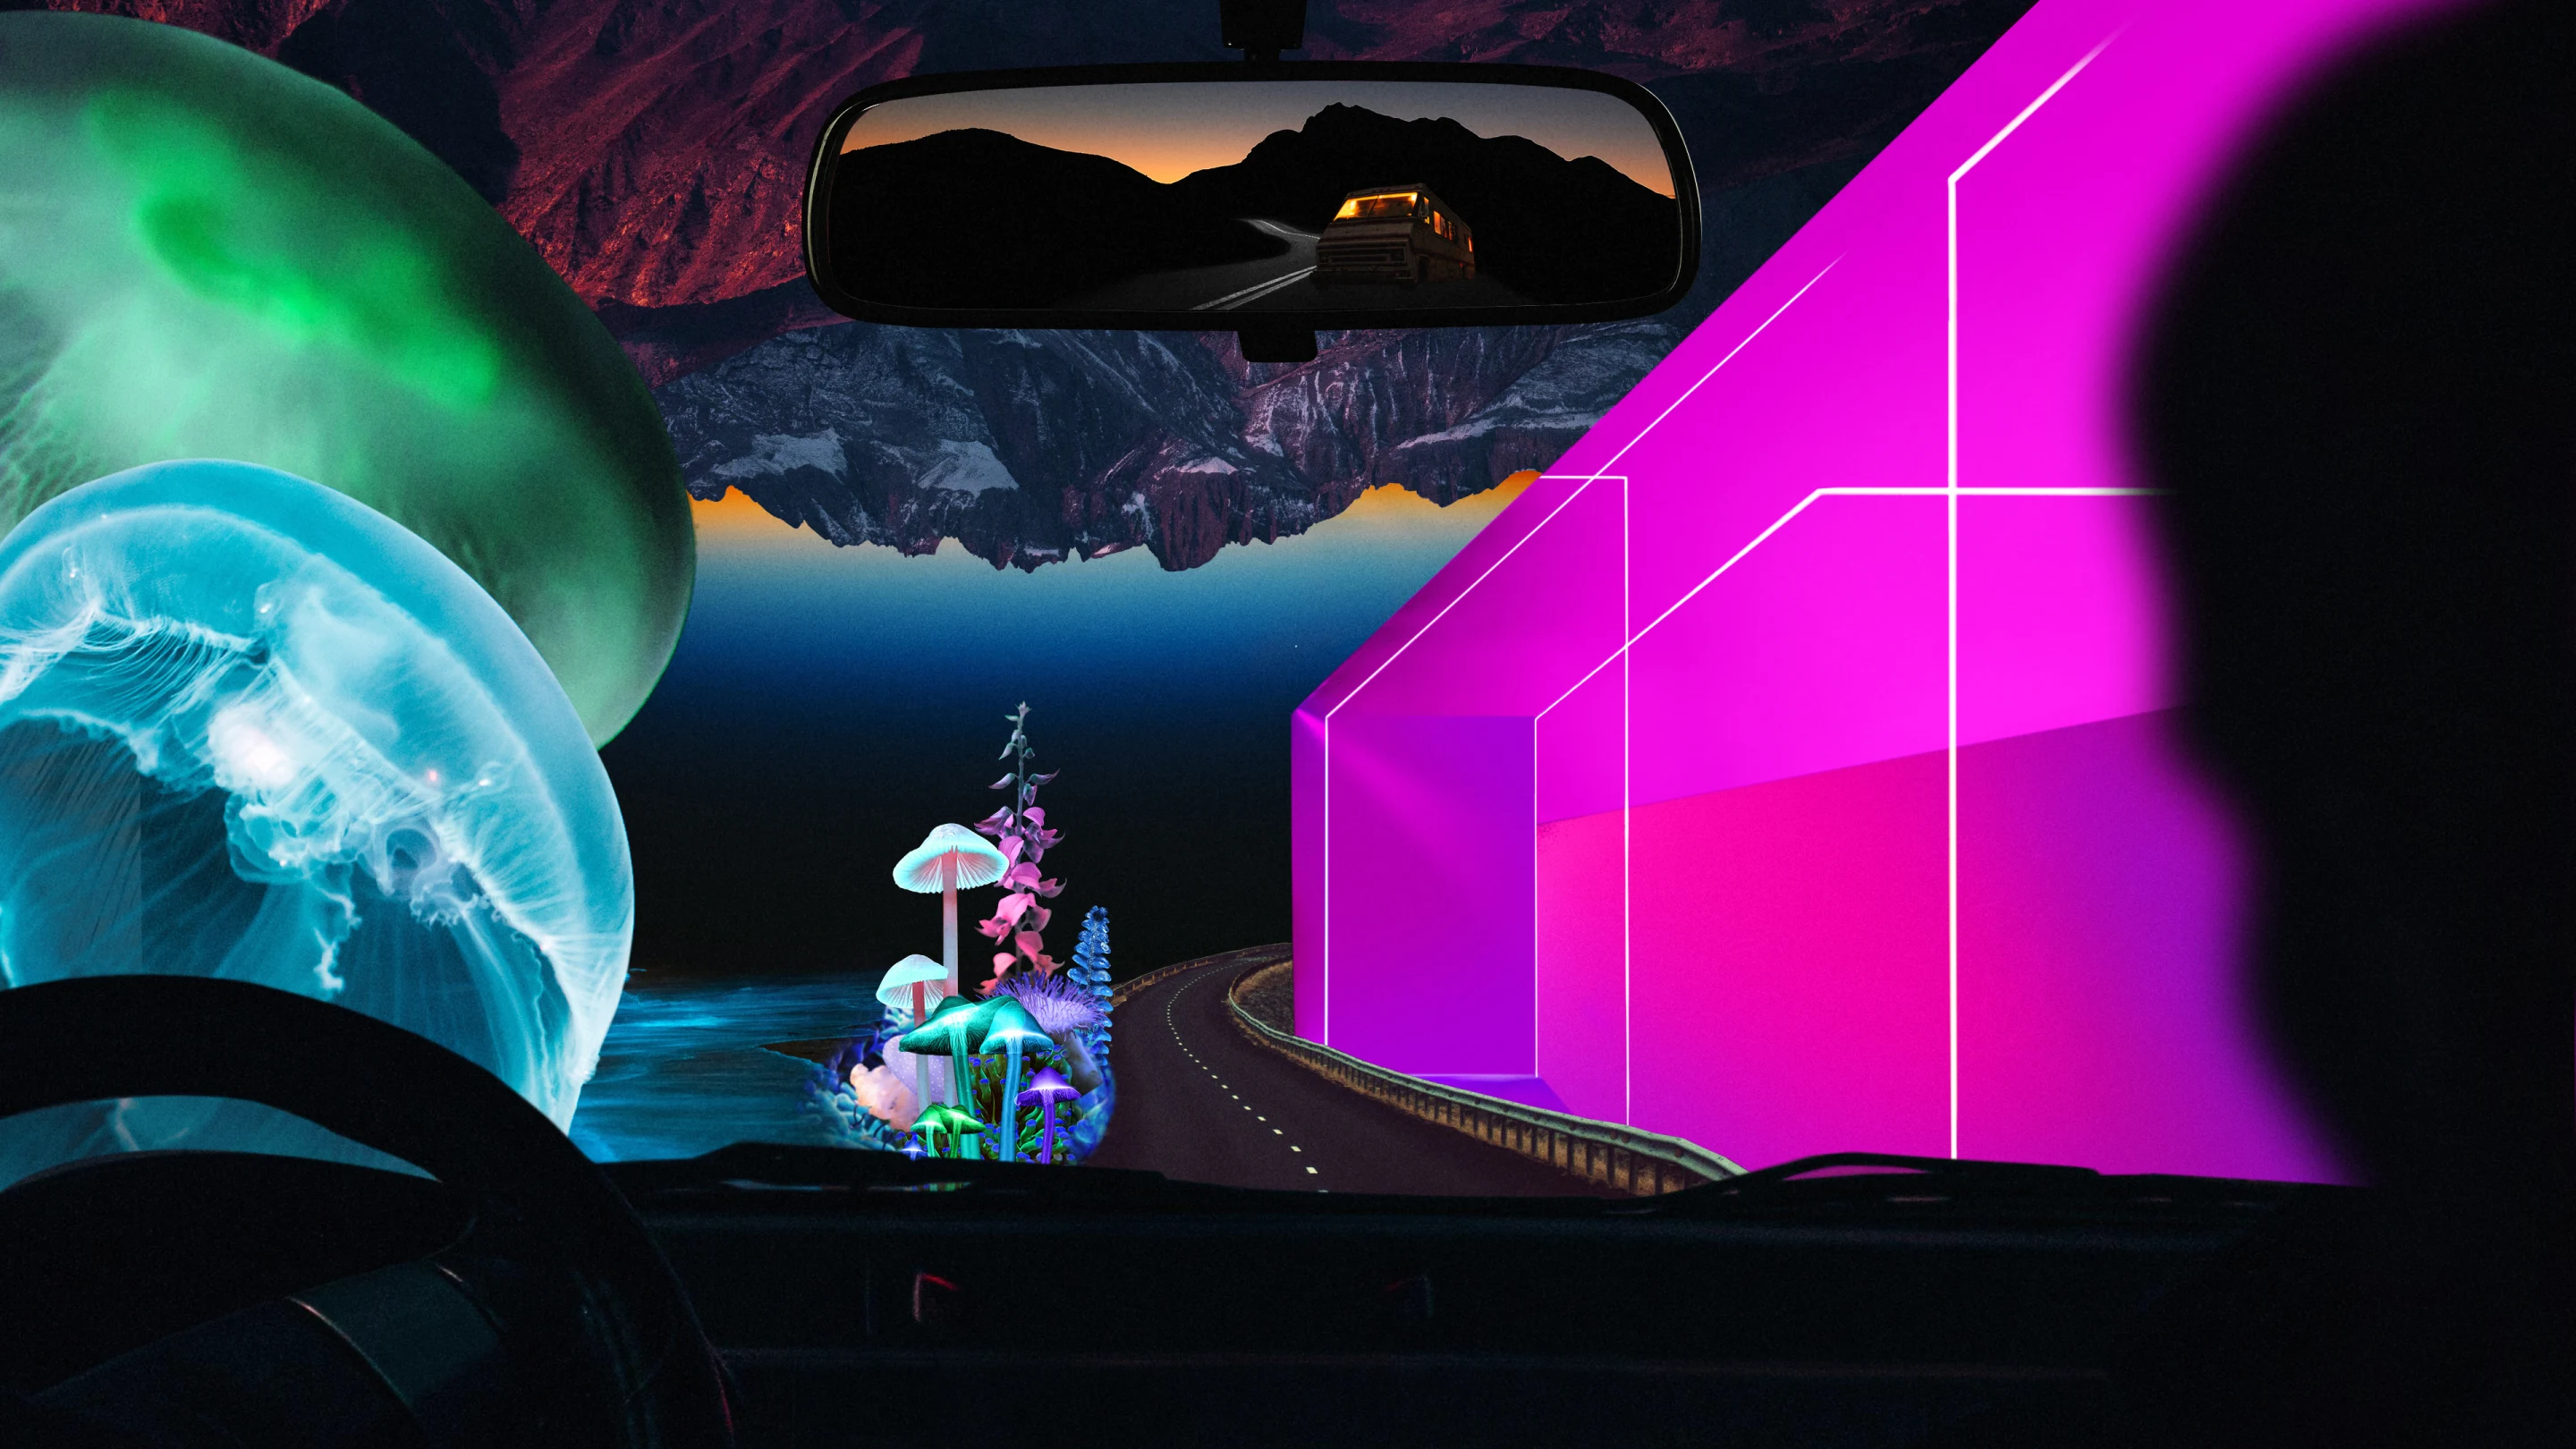 Collage dai colori intensi visto attraverso il parabrezza di un'auto. A sinistra una grande medusa, a destra una forma geometrica color rosa fosforescente, sullo sfondo formazioni montuose scure e grandi disegni di funghi.